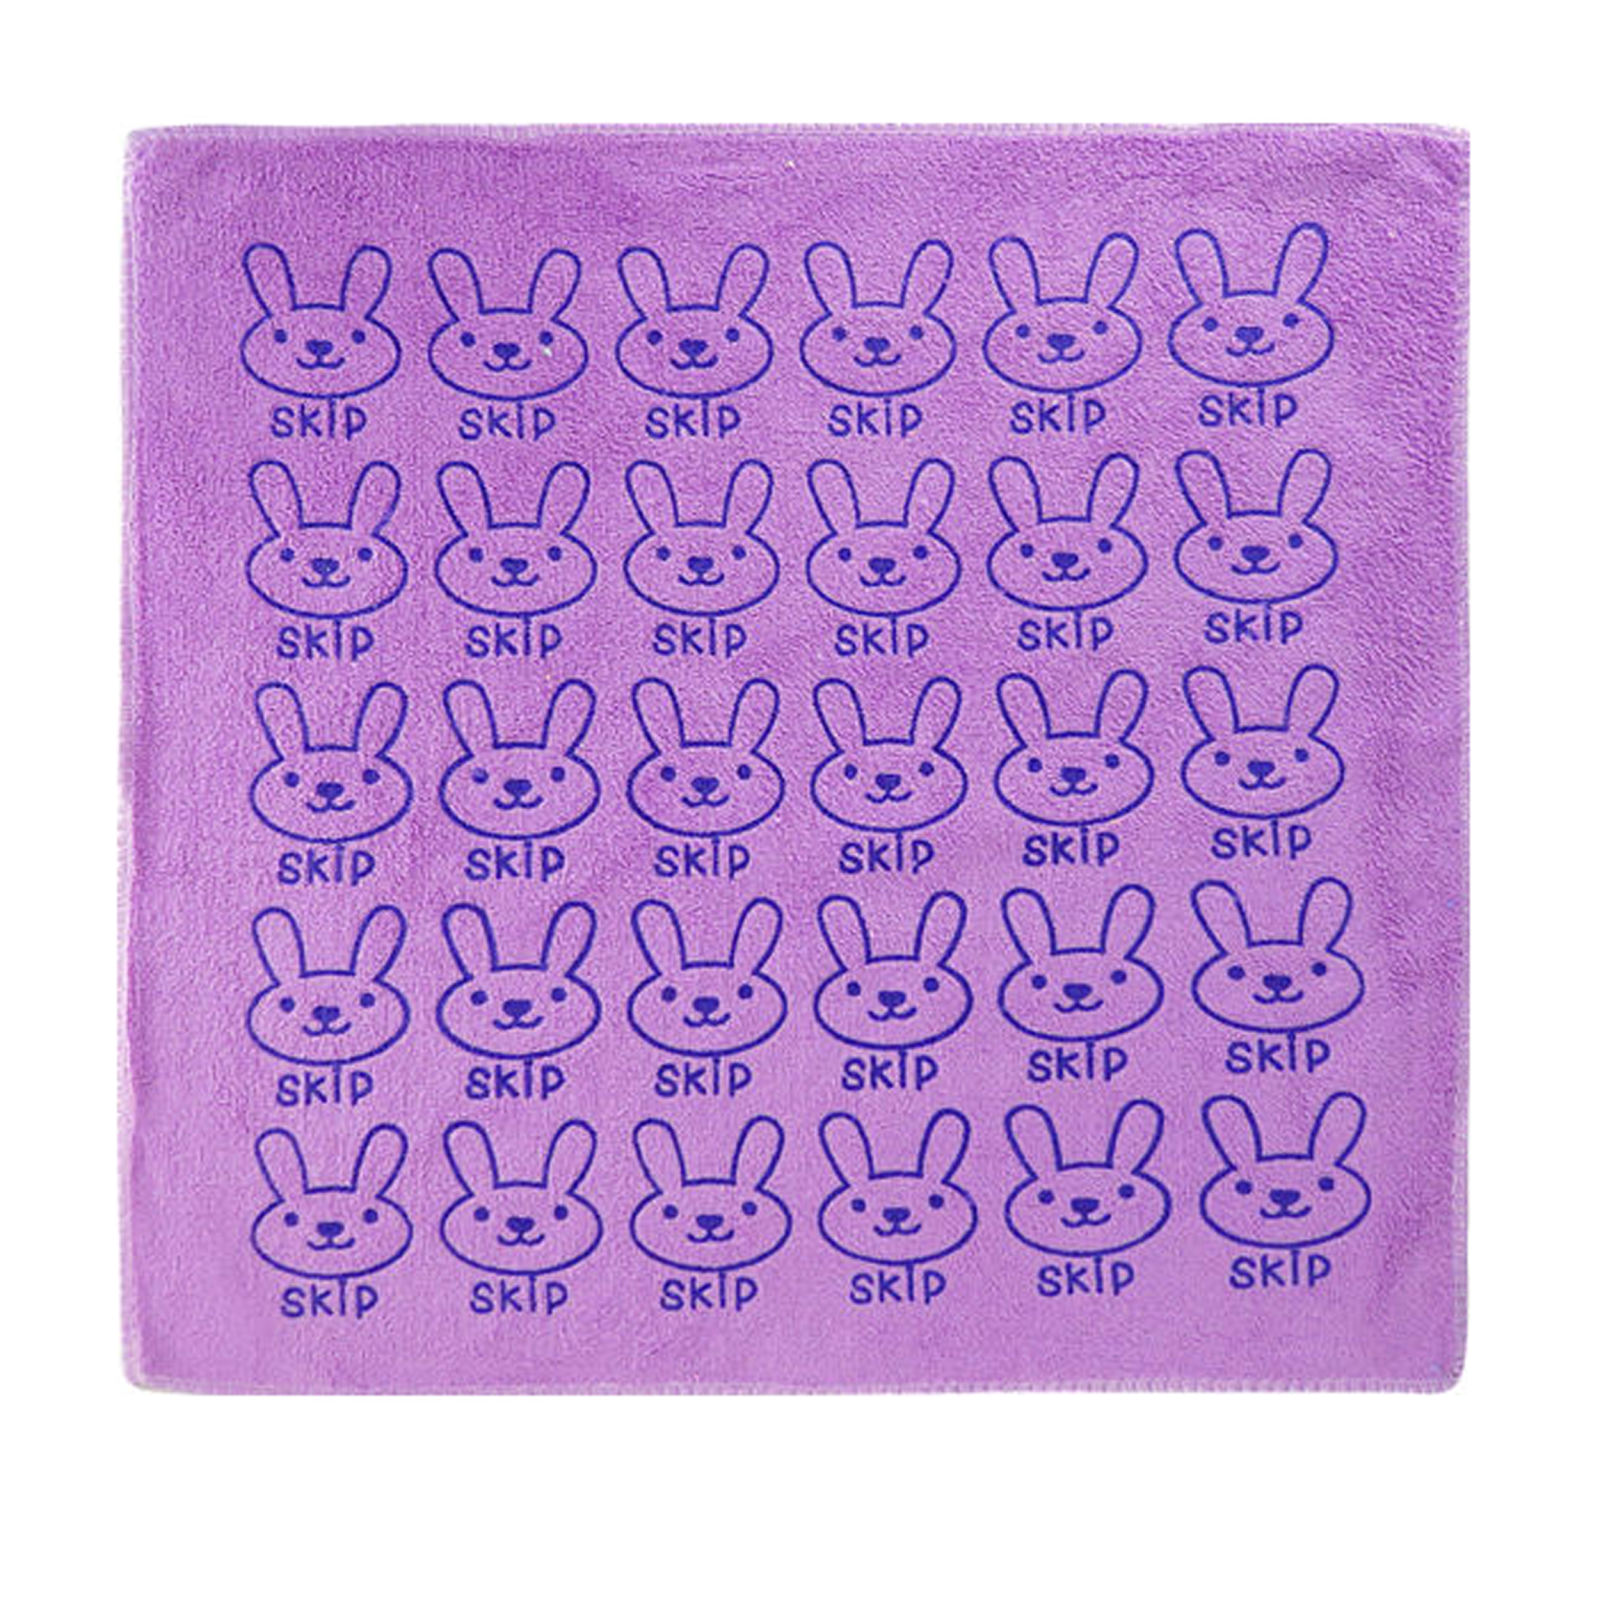 دستمال نظافت مدل میکروفایبر طرح خرگوش